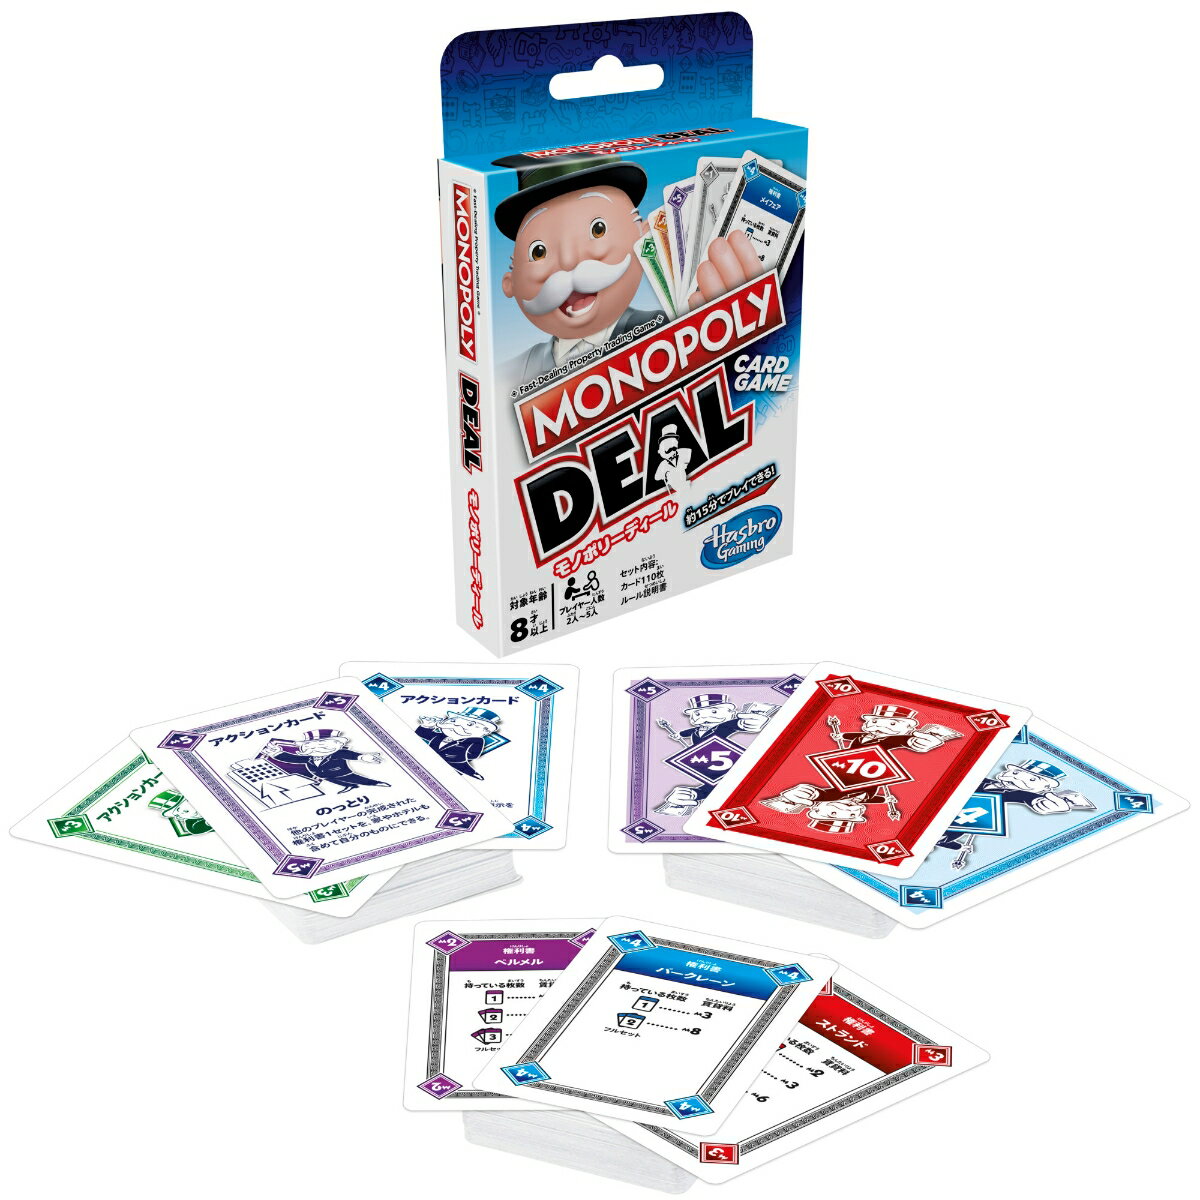 ■商品の主な特徴
【カードゲーム版のモノポリー】ボードゲームのモノポリーの楽しさはそのままに、カードゲームとして遊べるモノポリーが登場しました。
【クイックに決着をつけられるスピードゲーム】ボードゲームでは数時間のプレイもありましたが、本カードゲームでは、15-20分のプレイで勝者が決定します。
【権利書カードを3セット揃えて勝利しよう】違う色の権利書セットを3つ、いち早く完成させたプレイヤーの勝利です。
【トリッキーなプレイも楽しめる】アクションカードを使って、賃貸料をチャージしたり、権利書カードを「横取り」「交換」「のっとり」することができます。他のプレイヤーを出し抜きながら、勝利へと近づきましょう。
【セット内容】カード110枚、ルール説明書。

■商品説明
モノポリーブランドのディールカードゲームは、短時間で楽しめる、モノポリーのカードゲームです。プレイヤーは、権利書カード、賃貸料カード、家/ホテルカード、権利書ワイルドカード、アクションカードの110枚で、賃貸料をチャージしたり、トリッキーな取引をしたりして勝負します。異なるカラーの権利書カードを3セット、一番最初に集めると、勝利です。本カードゲームは、クイックに15分程度で、モノポリーのプロパティトレーディングを楽しめるカードゲームです! The Hasbro Gaming, Parker Brothers, and Monopoly names and logos, the distinctive design of the gameboard, the four corner squares, the Mr. Monopoly name and character, as well as each of the distinctive elements of the board and playing pieces are trademarks of Hasbro for its property trading game and game equipment.&copy; 1935, 2018-2023 Hasbro. All Rights Reserved.
[セット内容]カード110枚、ルール説明書【対象年齢】：8歳以上